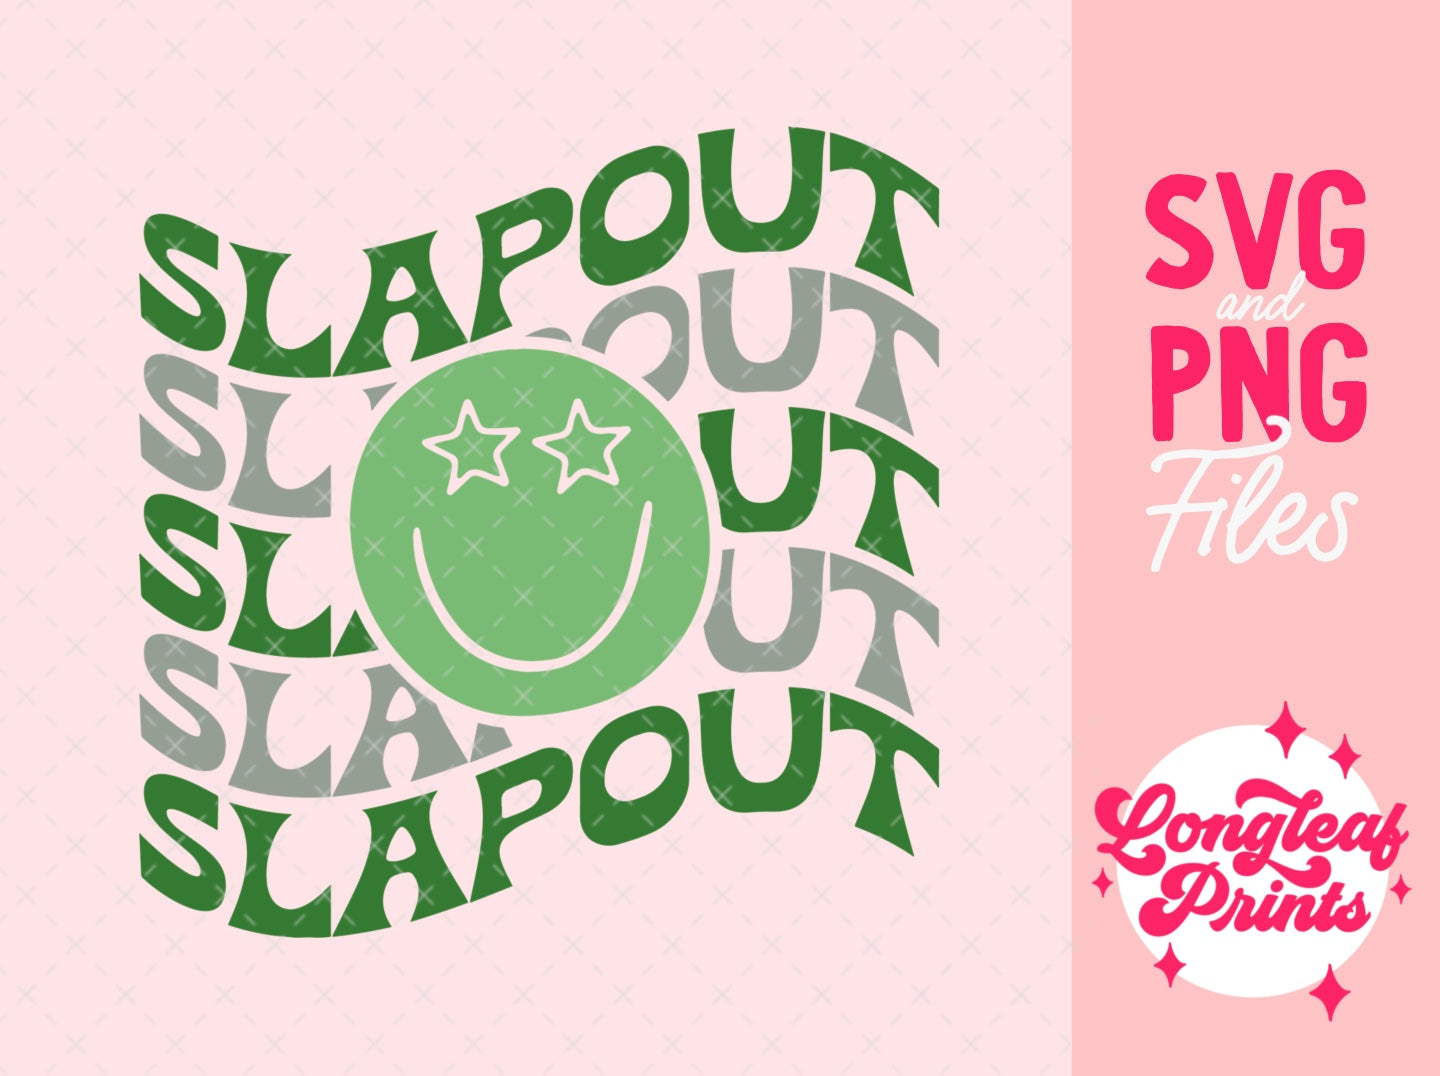 Slapout Alabama SVG Digital Download Design File